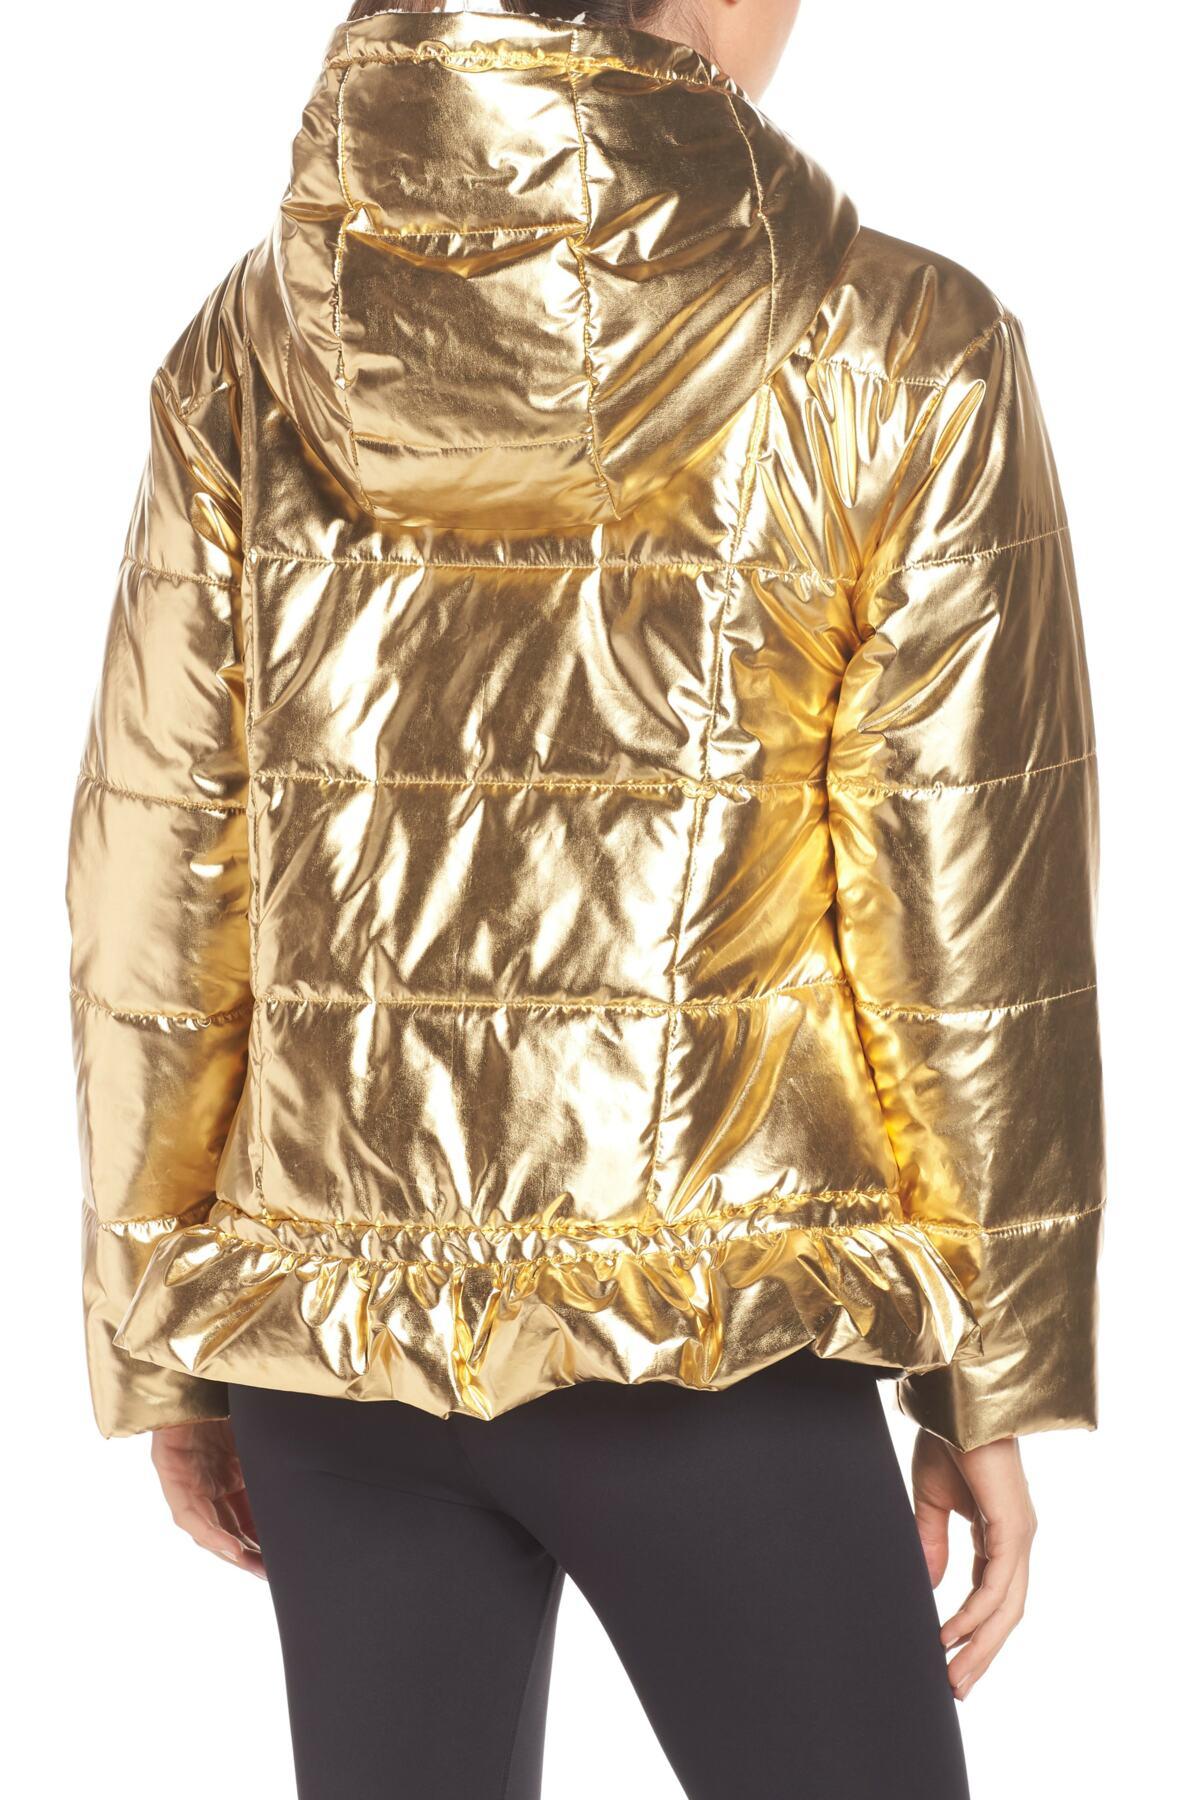 Kate Spade Metallic Puffer Jacket in Metallic - Lyst